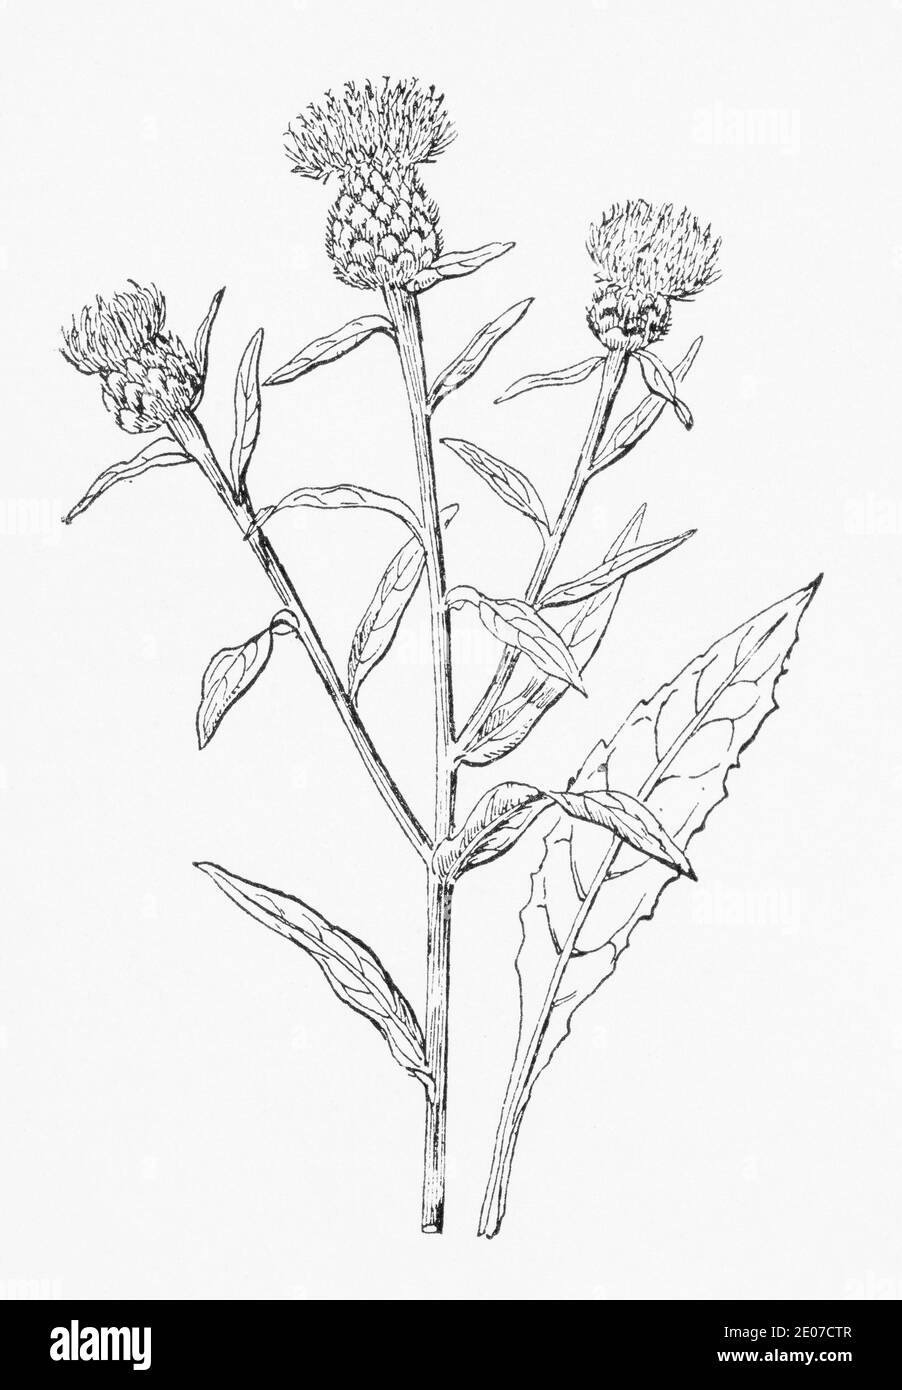 Alte botanische Illustration Gravur von Black Knapweed, Common Knapweed / Centaurea nigra. Traditionelle Heilkräuter Pflanze. Siehe Hinweise Stockfoto